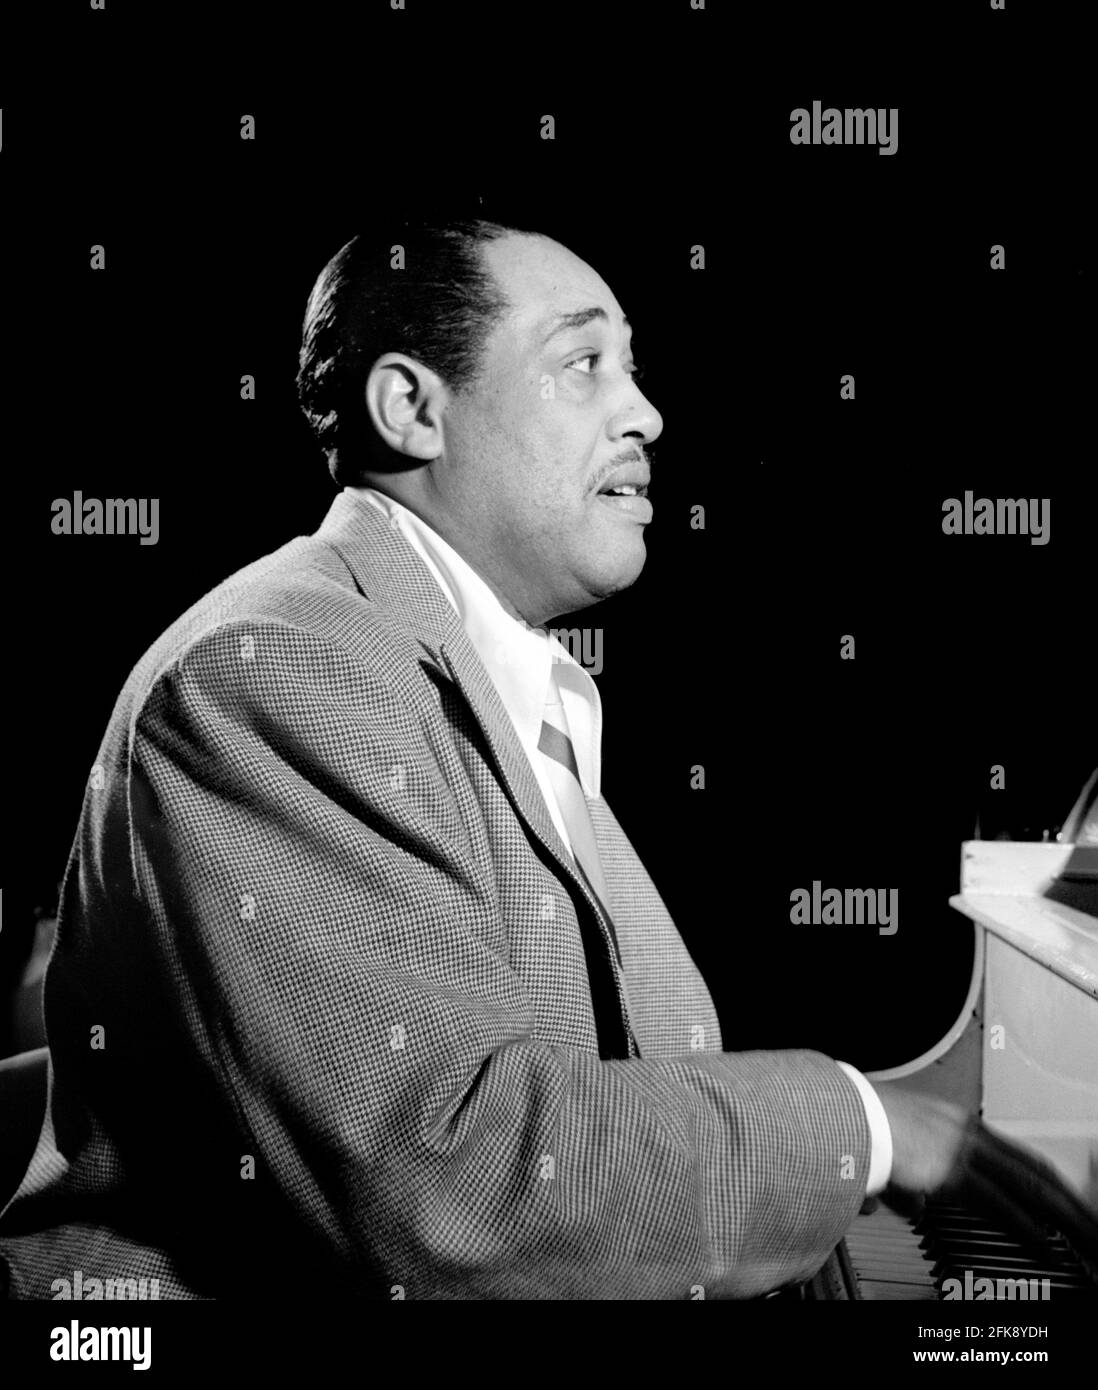 Duke Ellington. Porträt des amerikanischen Jazz-Pianisten Edward Kennedy 'Duke' Ellington (1899-1974) von William P. Gottlieb, 1946 Stockfoto